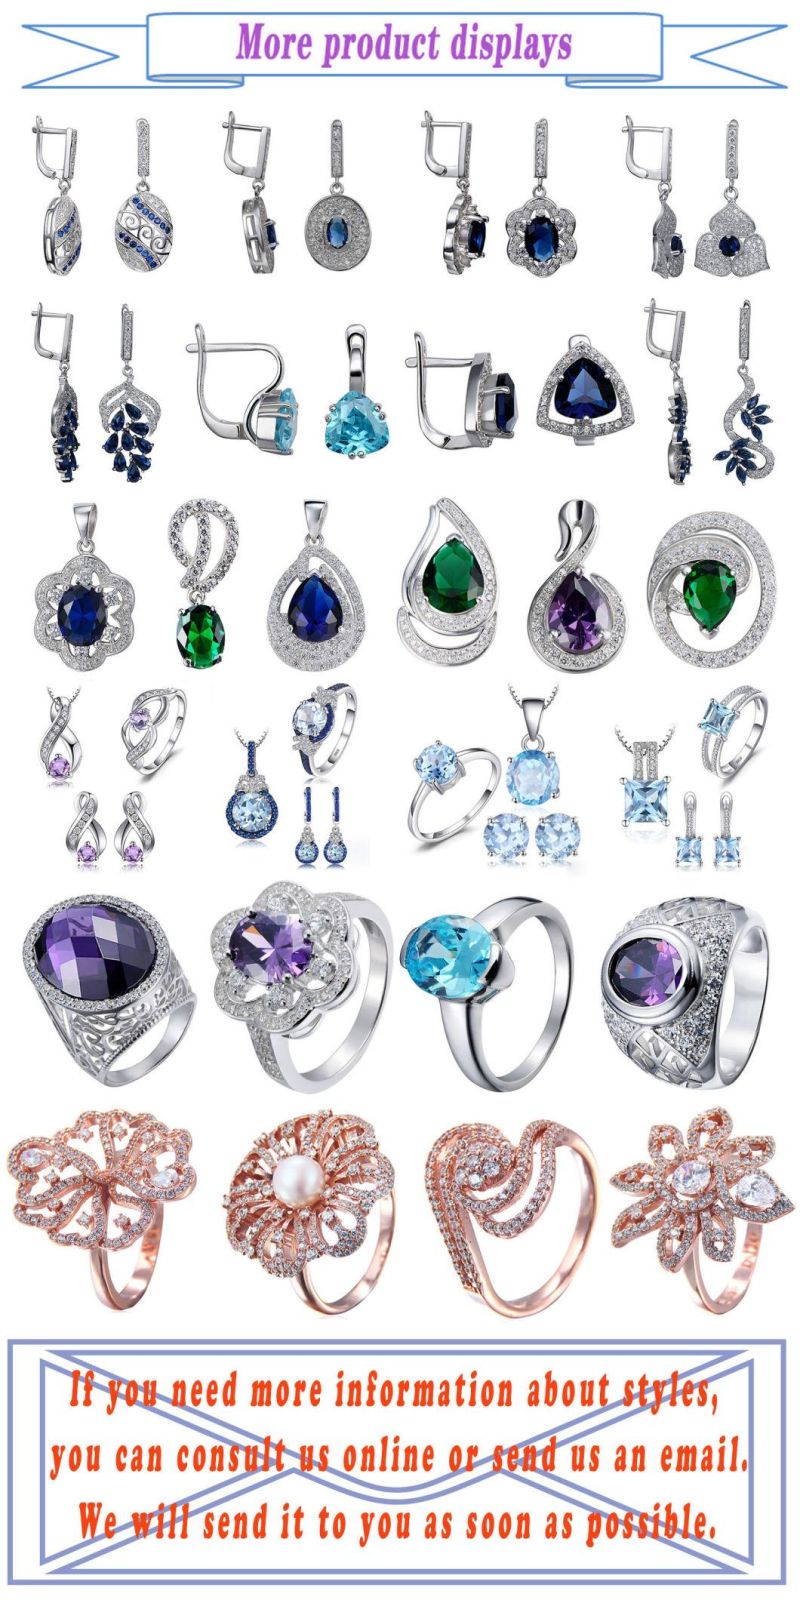 New Design 925 Sterling Silver Opal Stud Earrings for Girls Women Jewelry